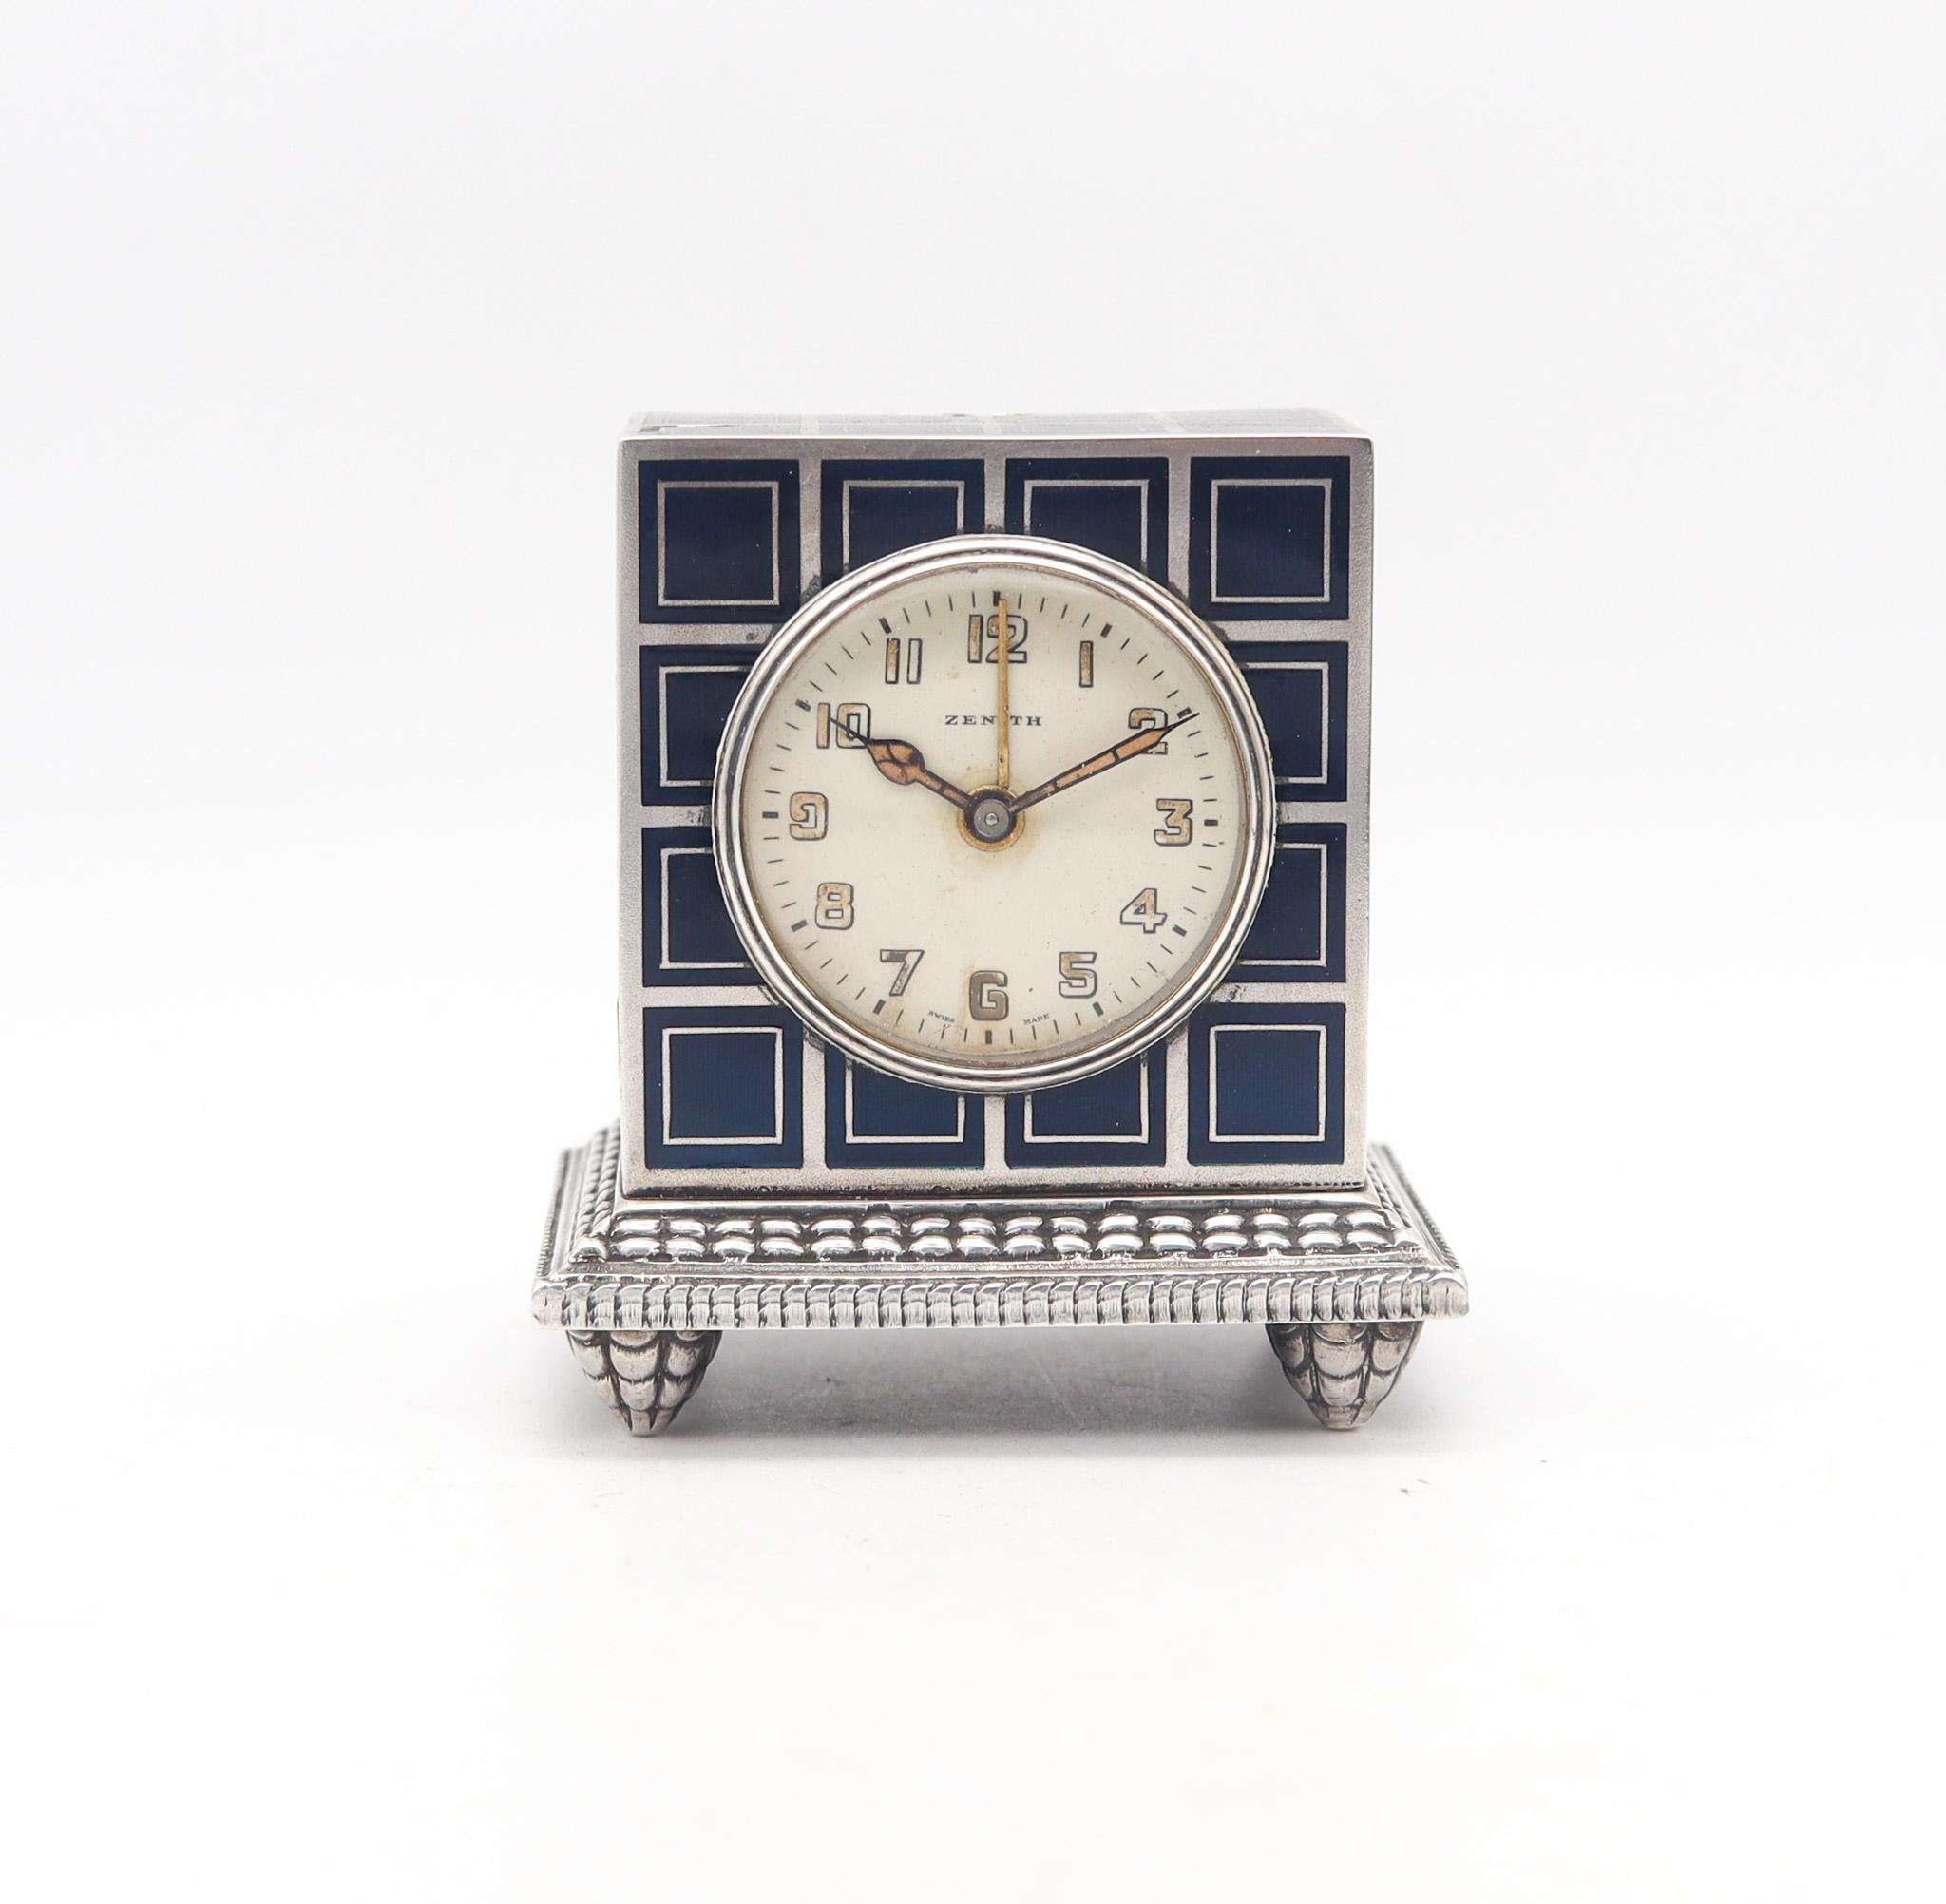 Un réveil de voyage miniature conçu par Zenith.

Voici un magnifique réveil miniature en forme de voiture de voyage, fabriqué à Genève en Suisse par la société Zenith. Cette petite horloge ancienne est exceptionnelle et a été créée pendant la